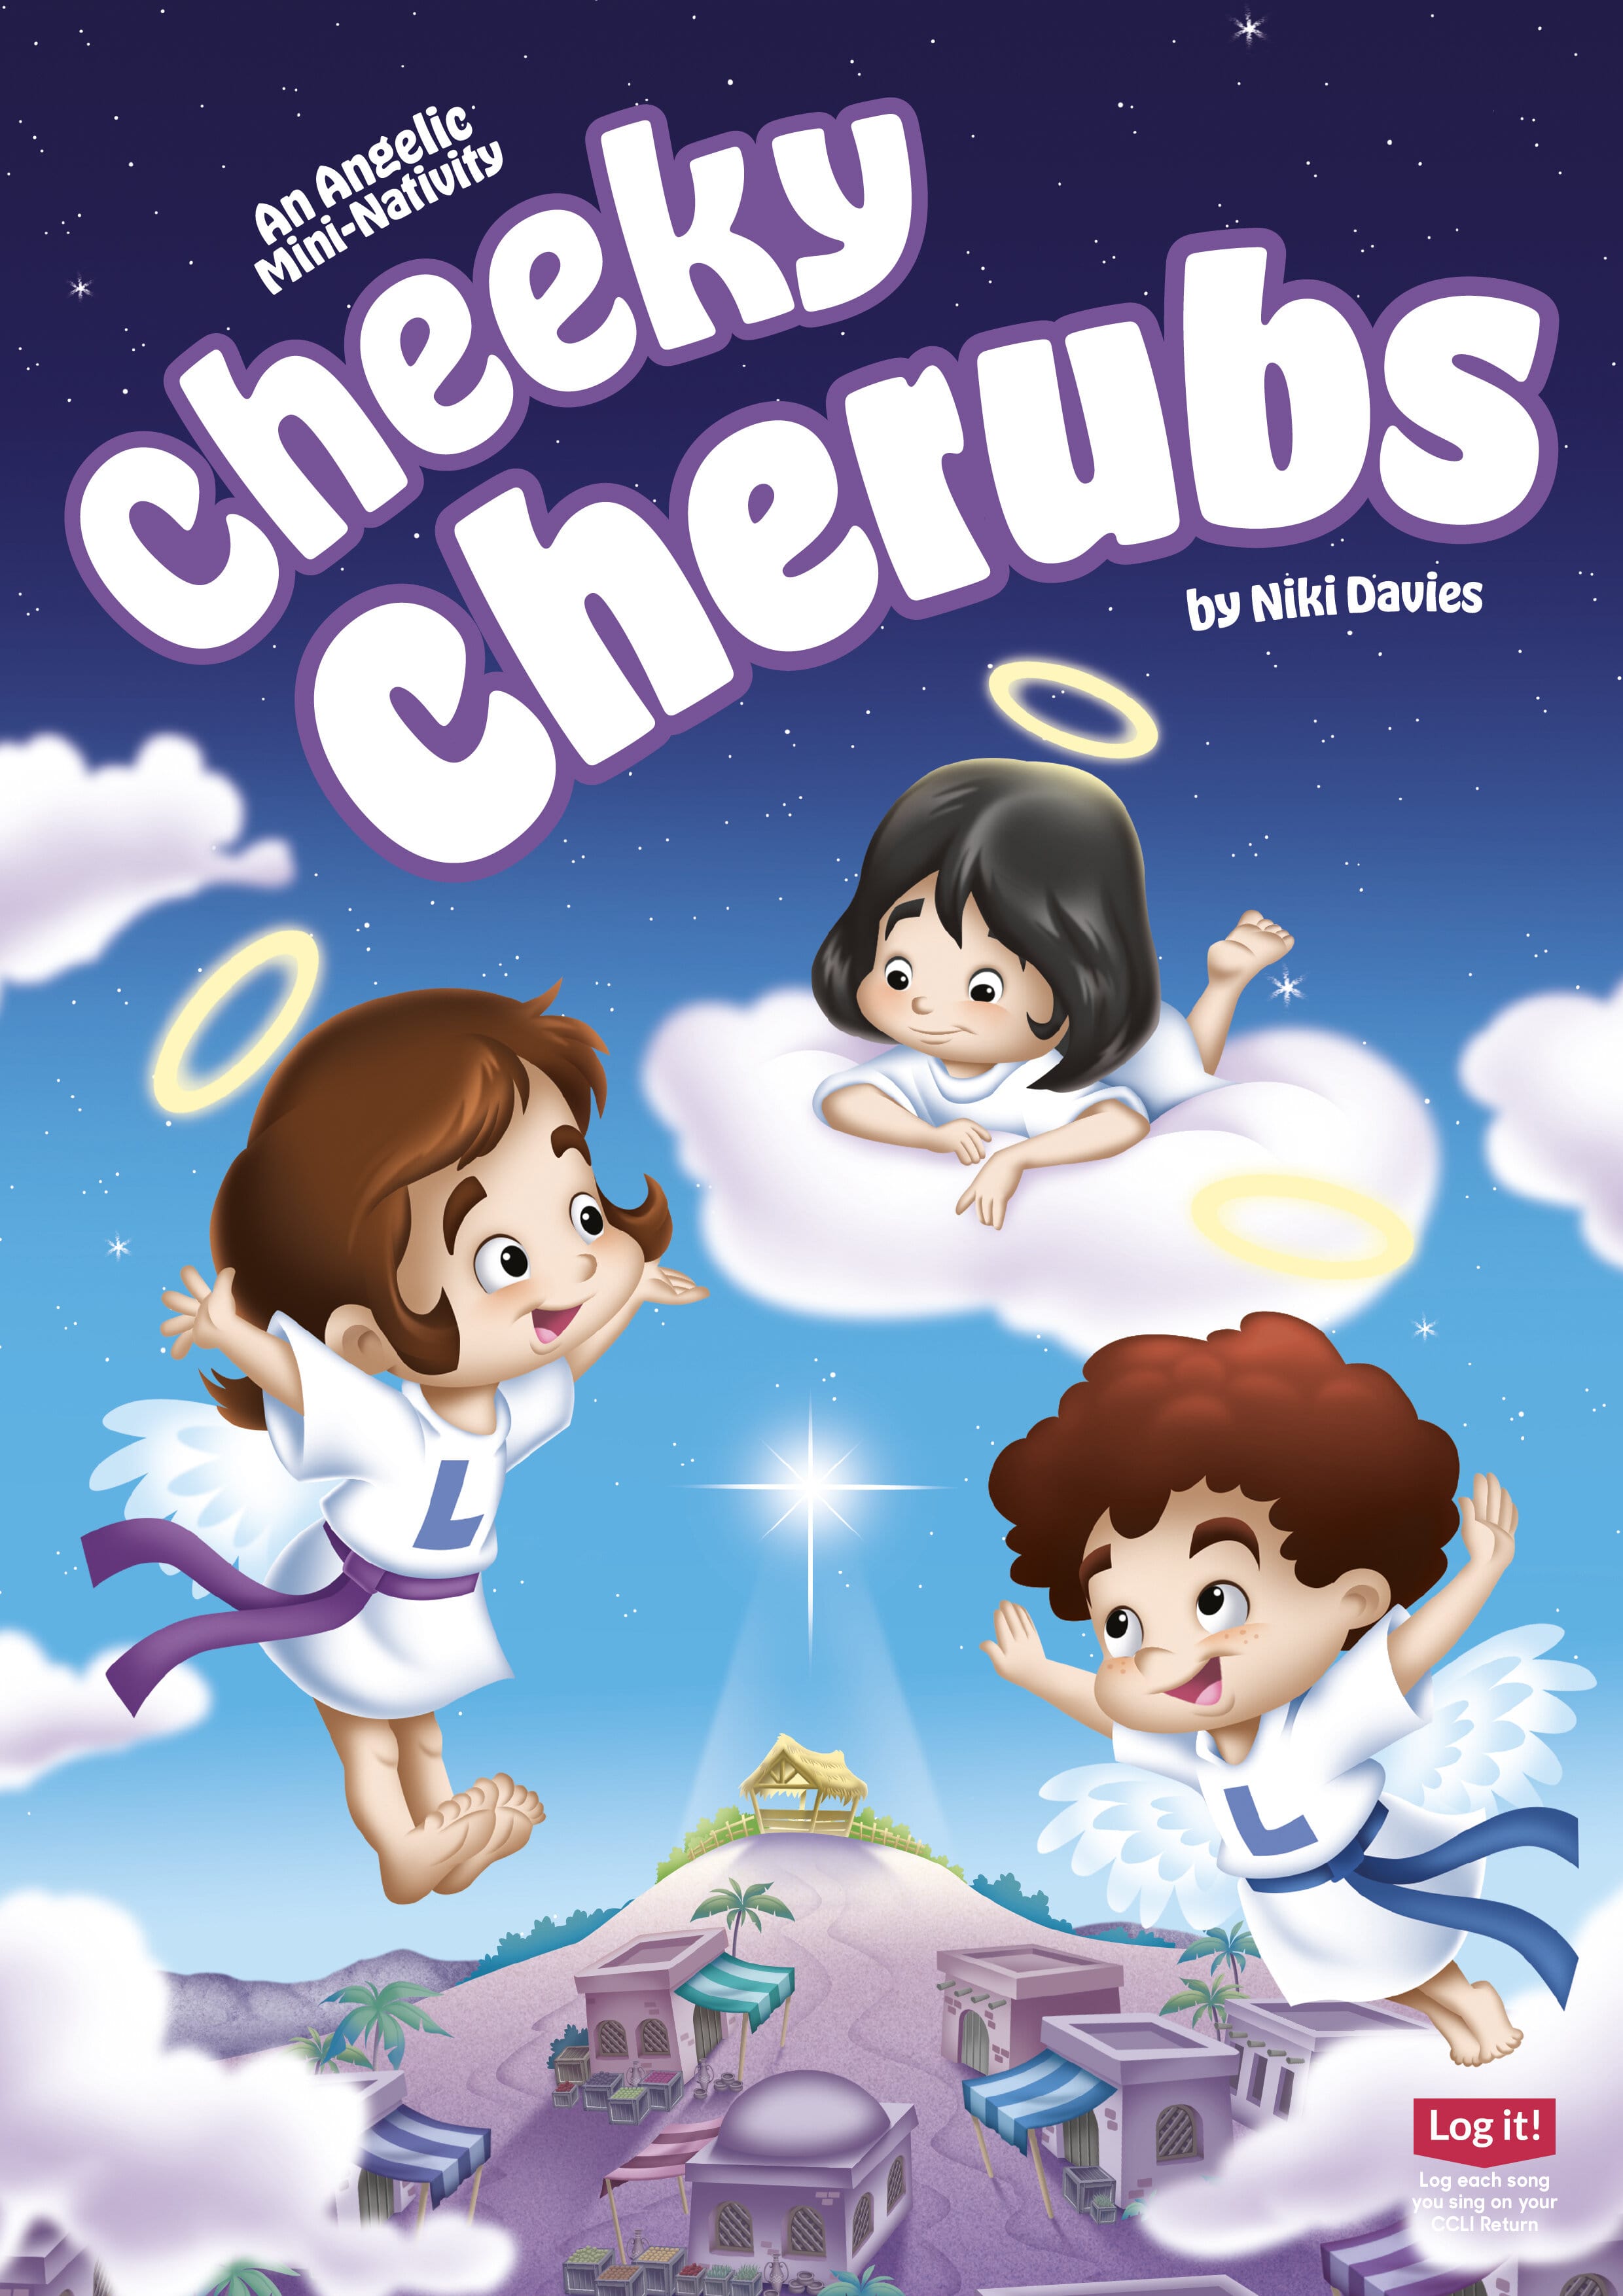 Cheeky Cherubs - A Mini Nativity